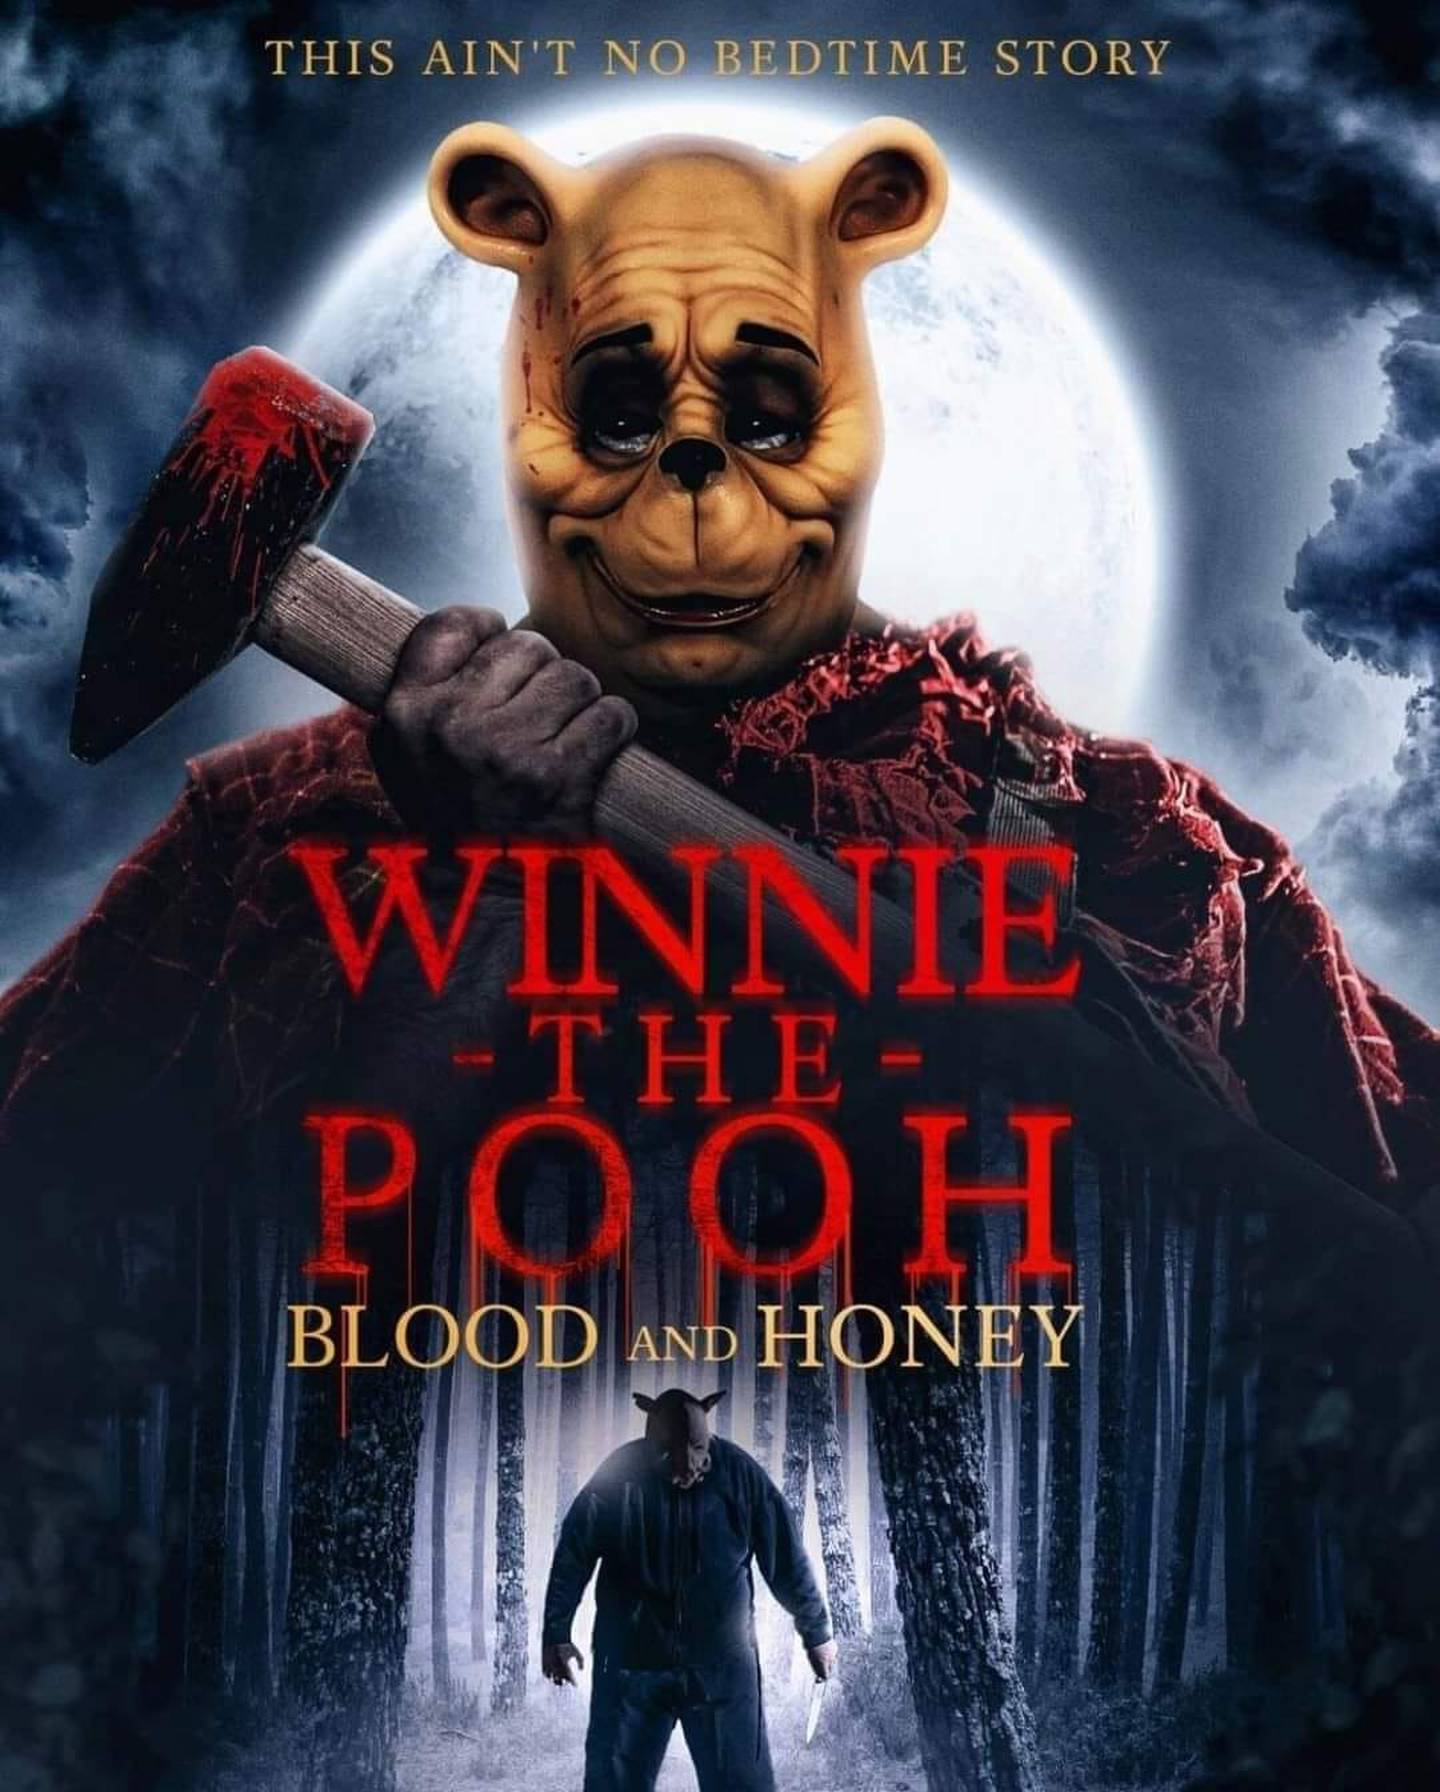 Parte del material publicitario de la cinta Winnie The Pooh: Miel y sangre, declarada la peor película del 2024 en la edición de este año de los premios Razzie. Foto: Cortesía.